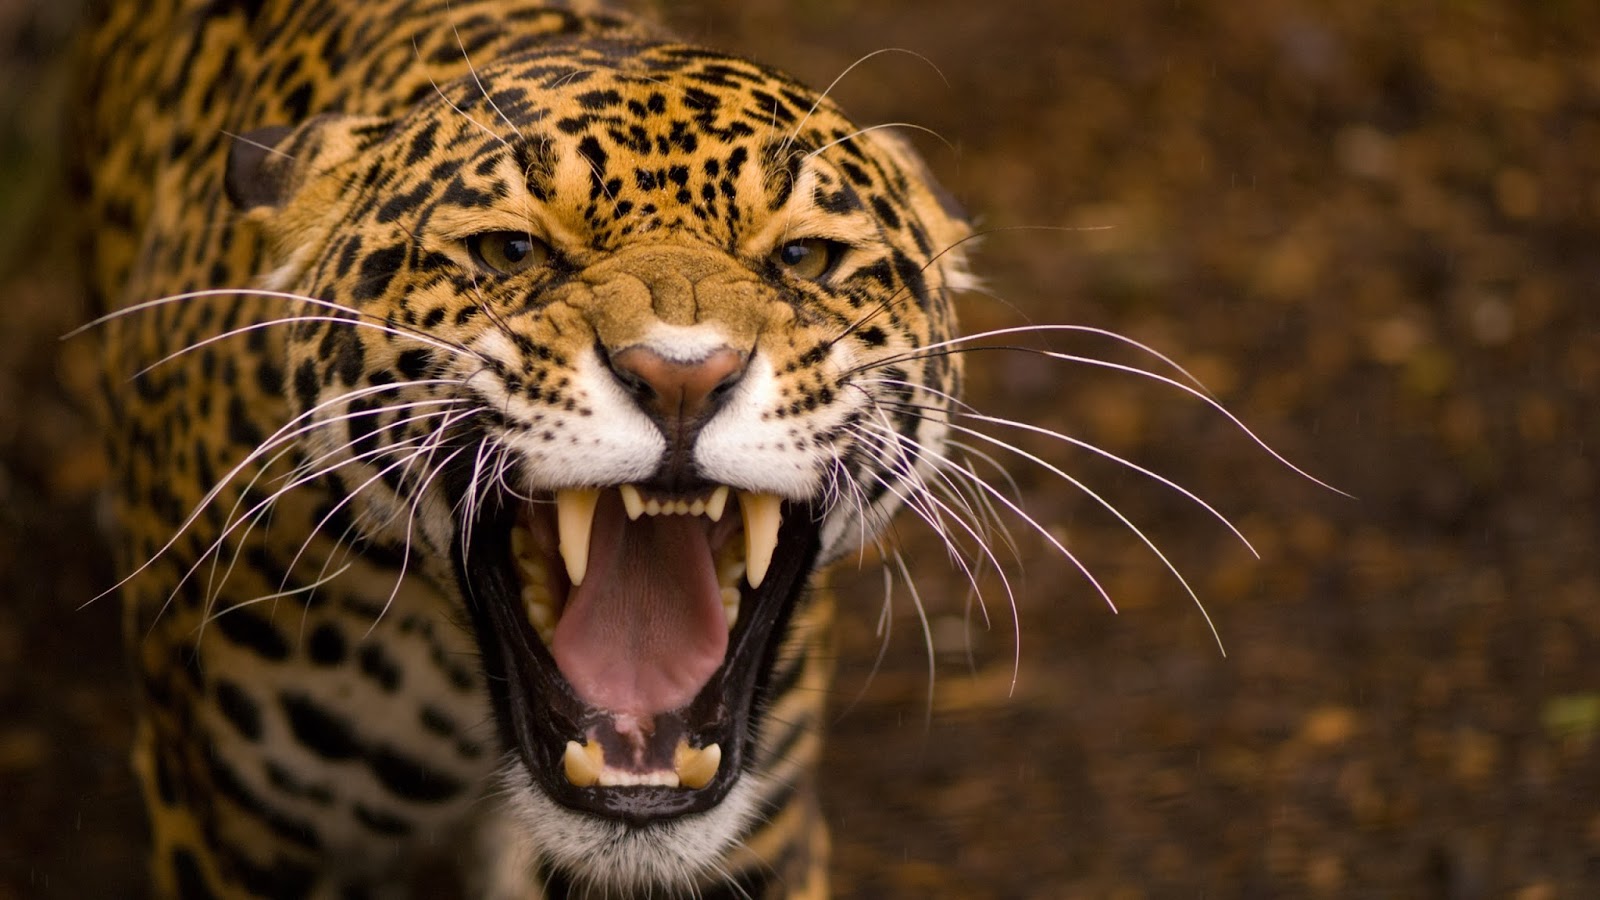 Jaguar Roar